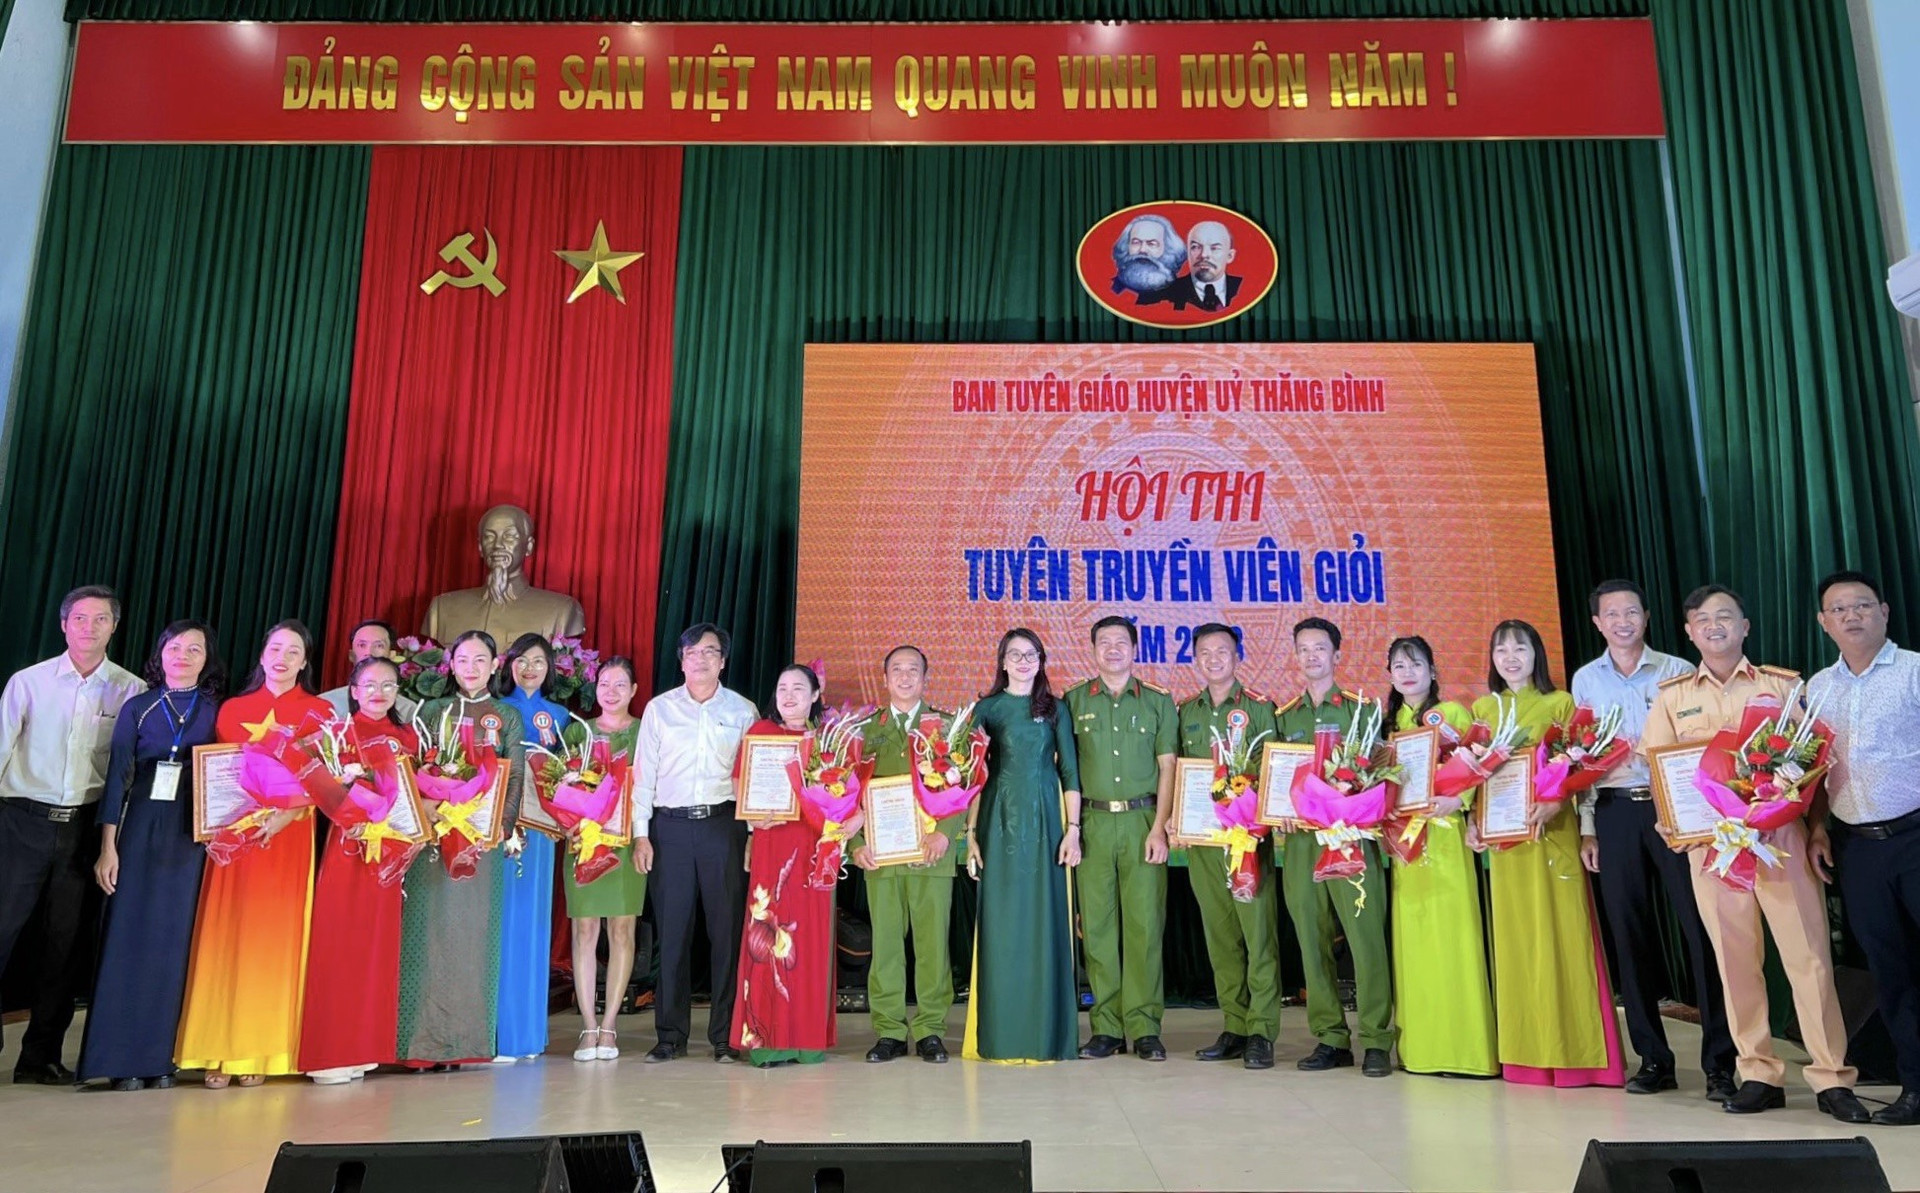 Hội thi góp phần nâng cao công tác tuyên truyền miệng trên địa bàn huyện Thăng Bình trong thời gian đến. Ảnh: V.T